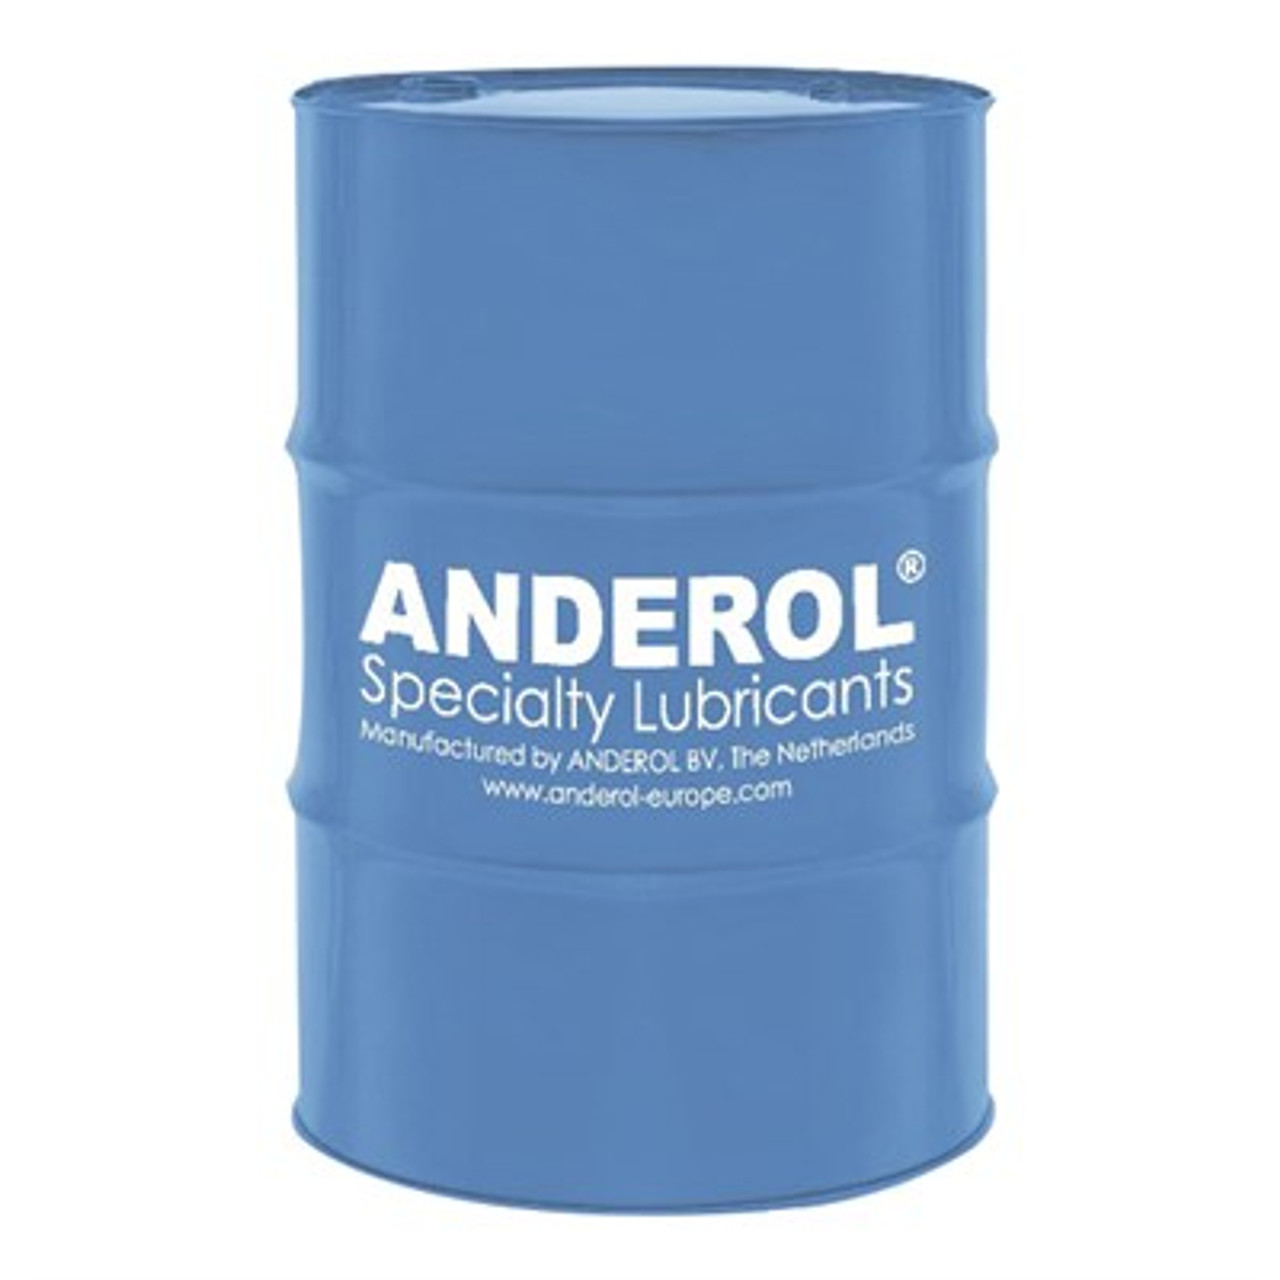 Anderol 555 - 55 Gallon Drum